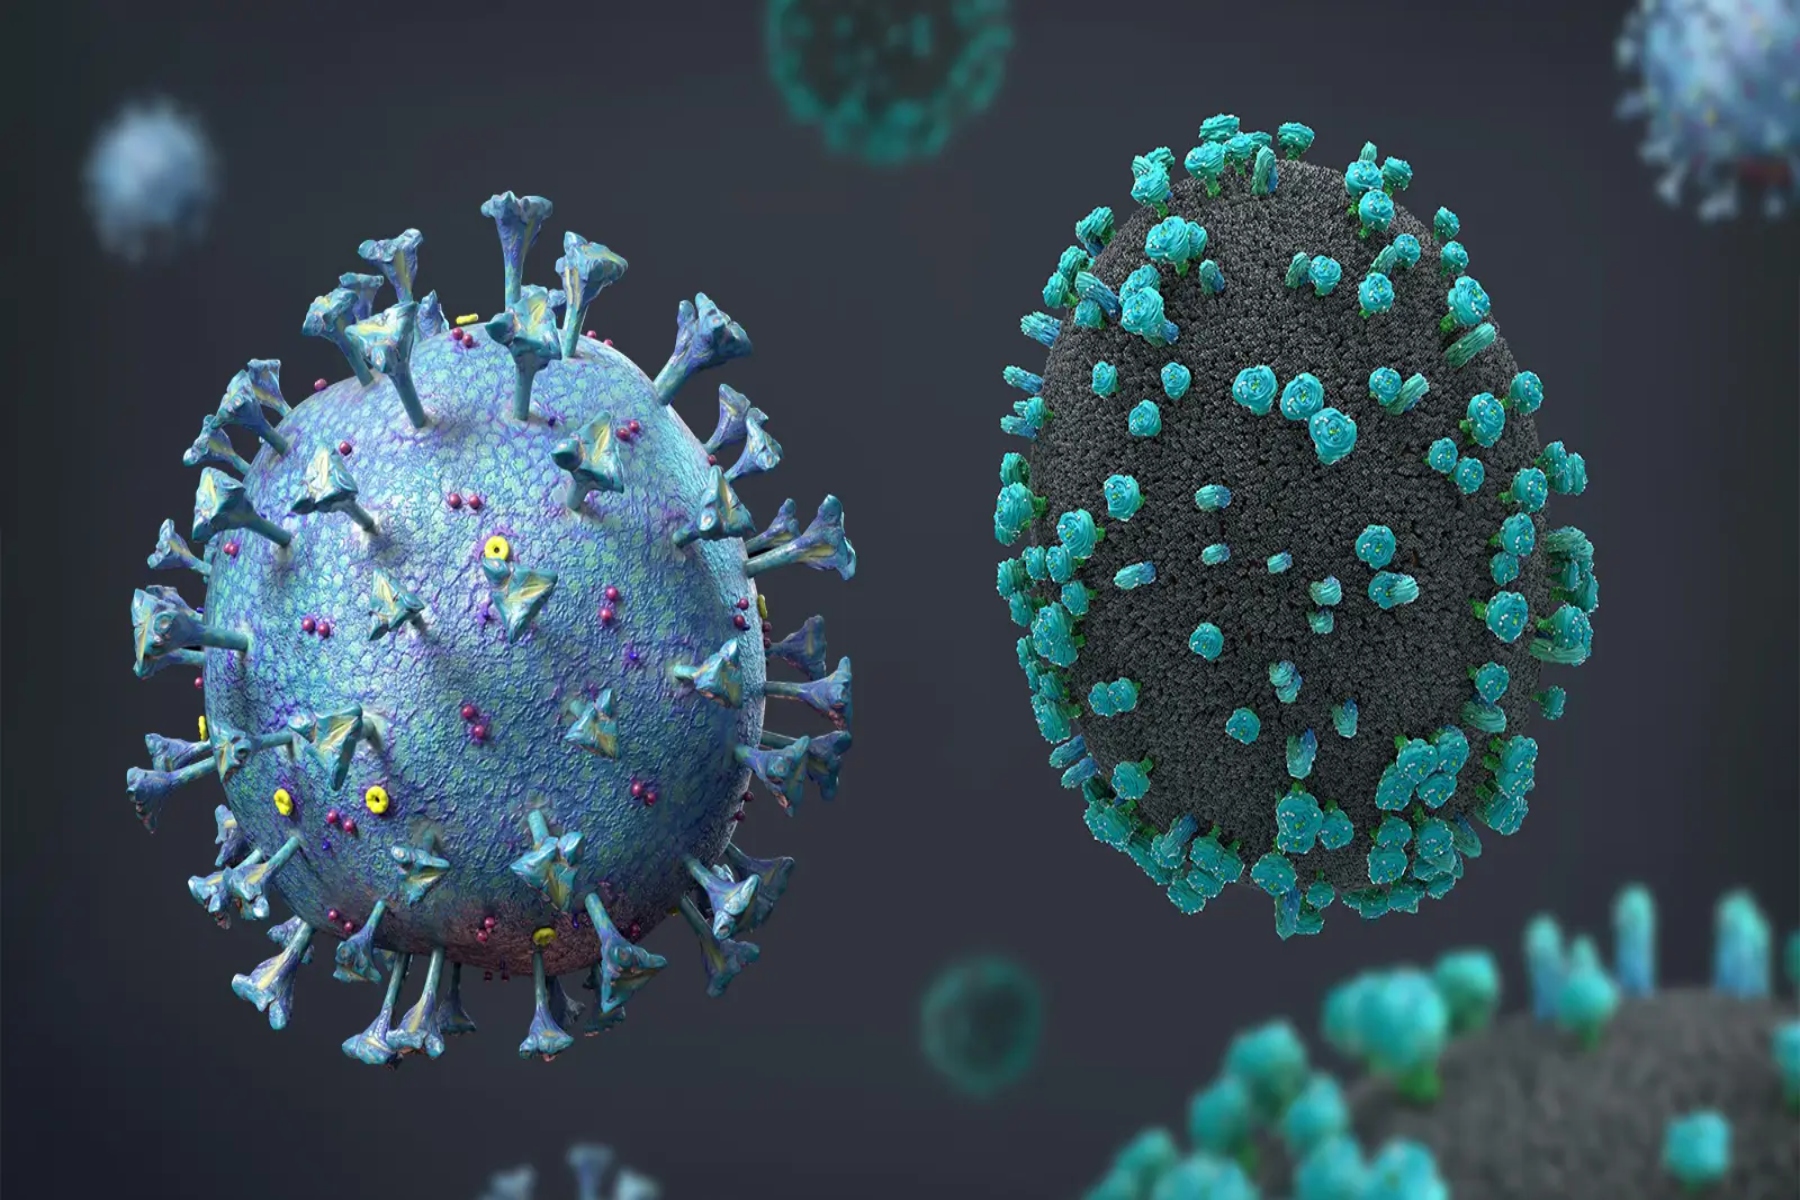 Γρίπη και COVID-19: Ποια είναι η καλύτερη θεραπεία και για τις δύο λοιμώξεις